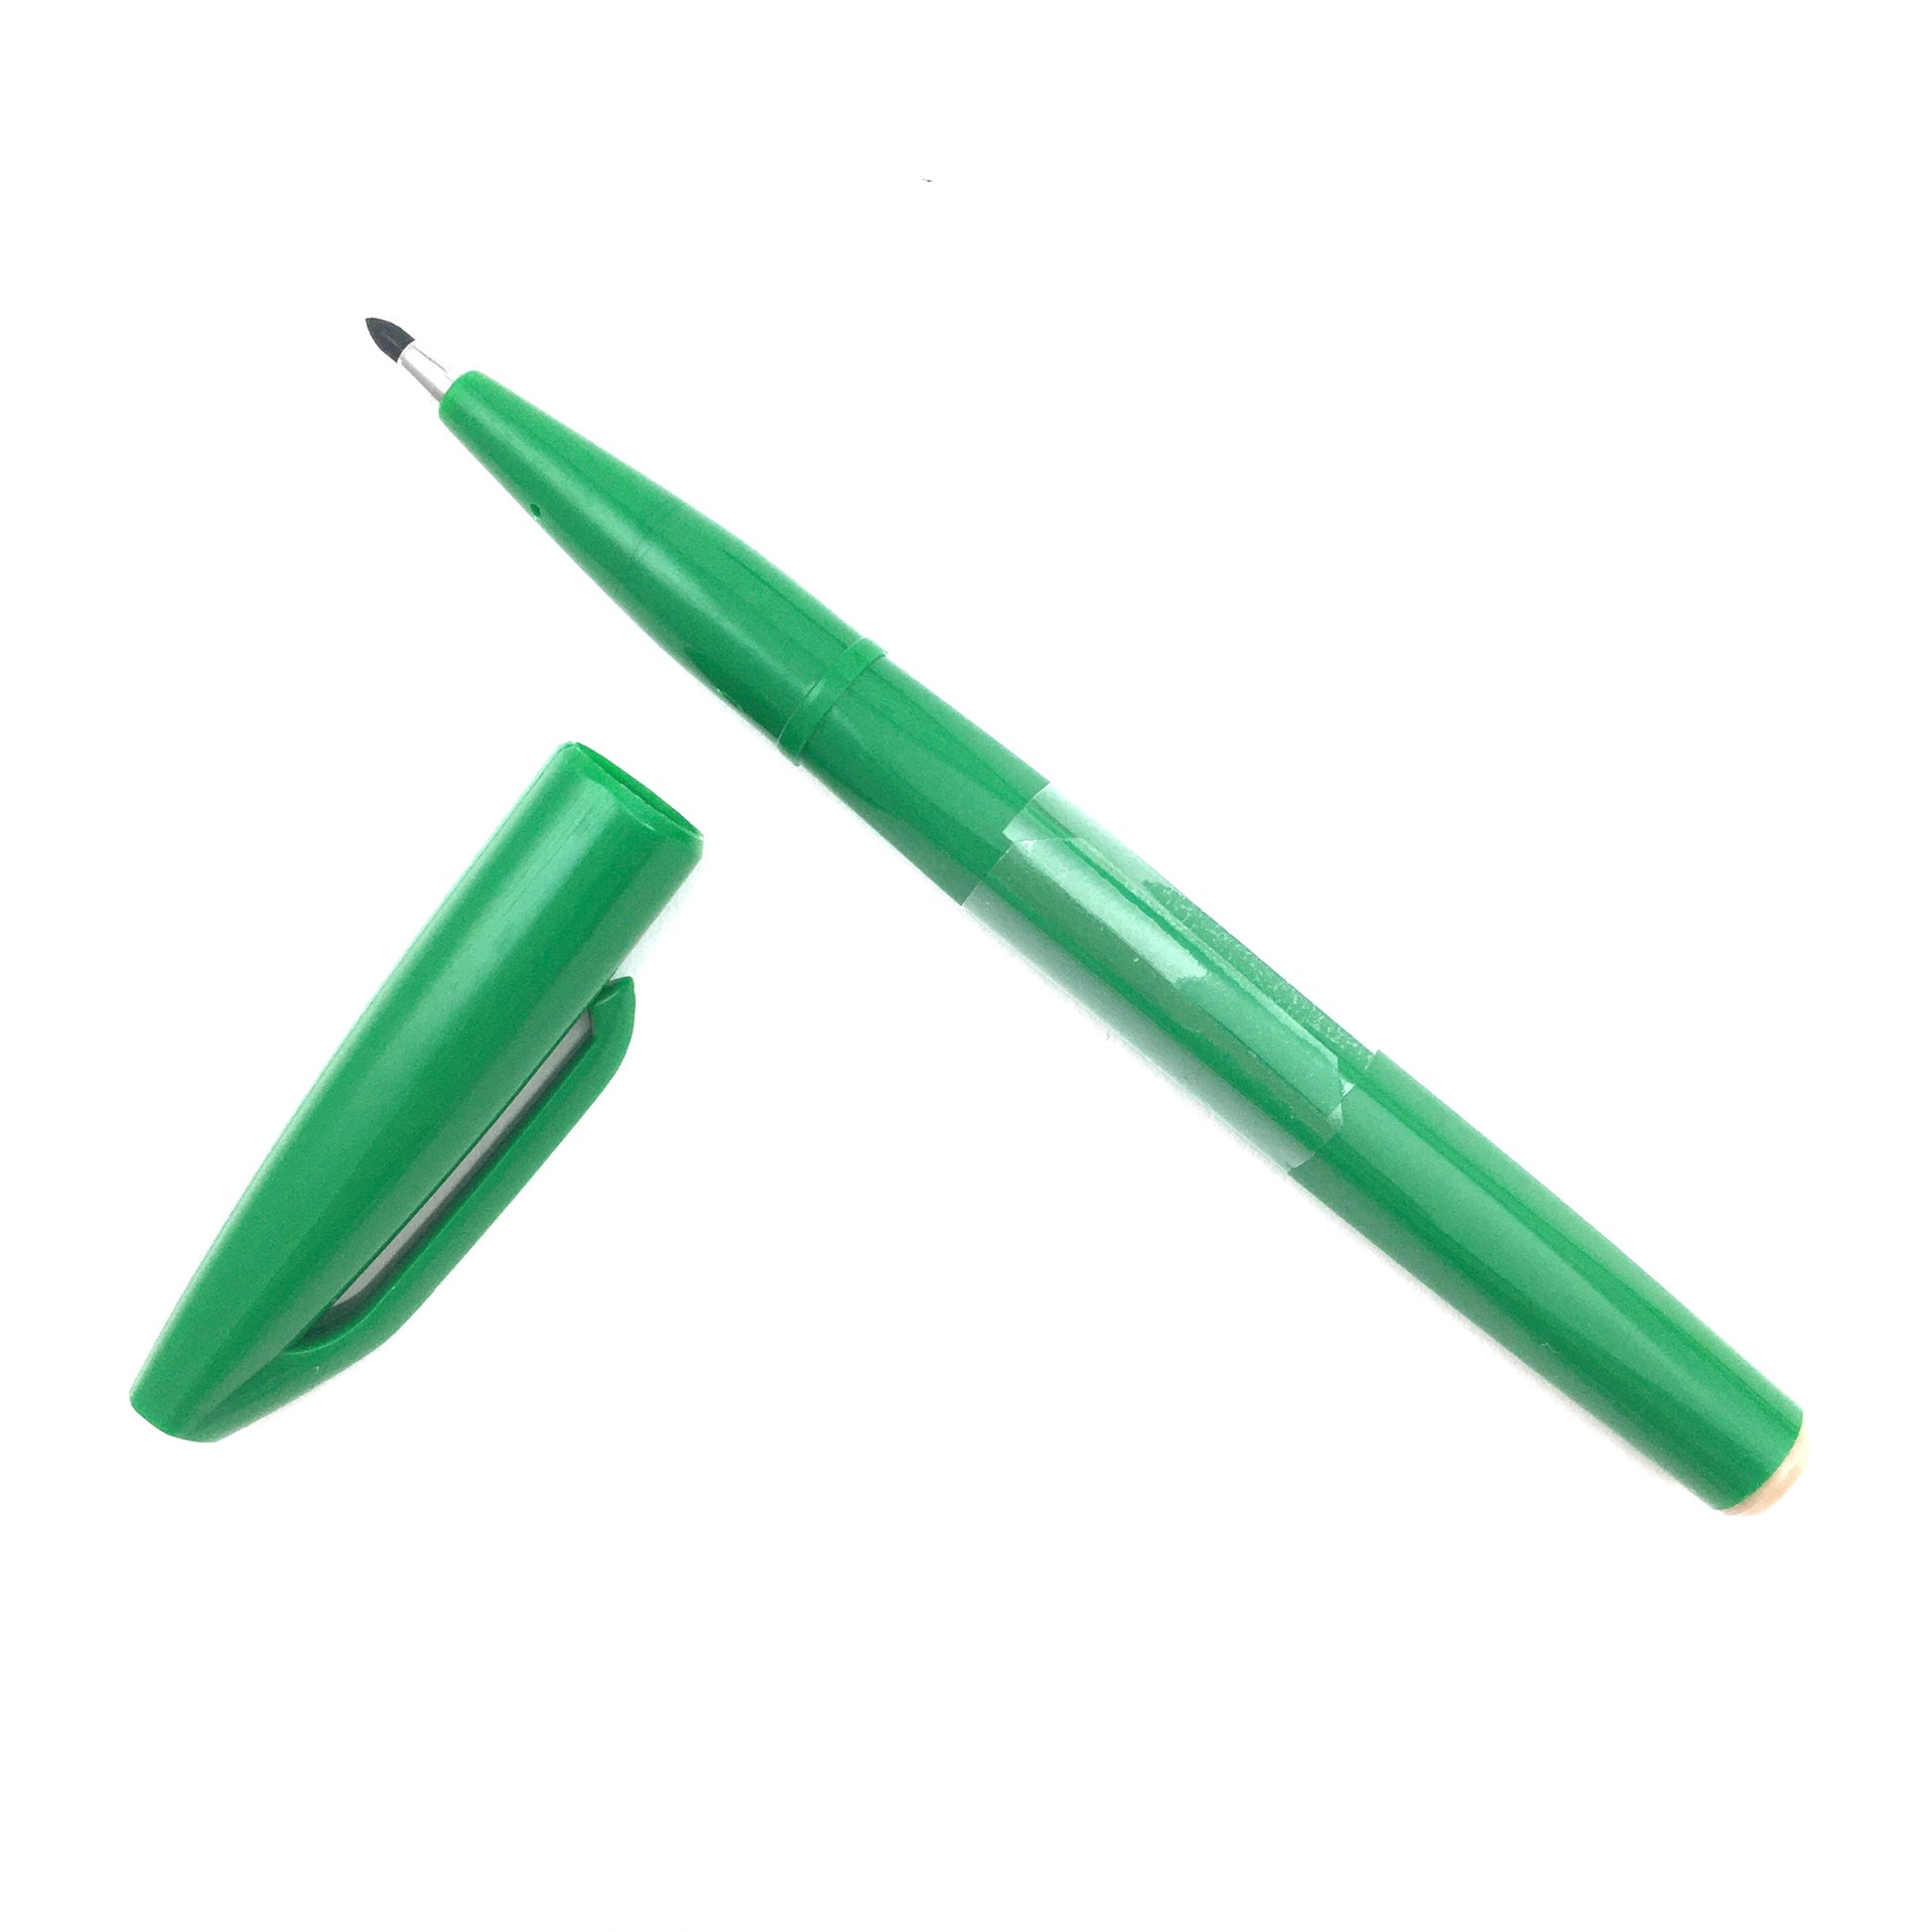 Pentel Sign Pen with Fiber Tip - Green by Pentel - K. A. Artist Shop